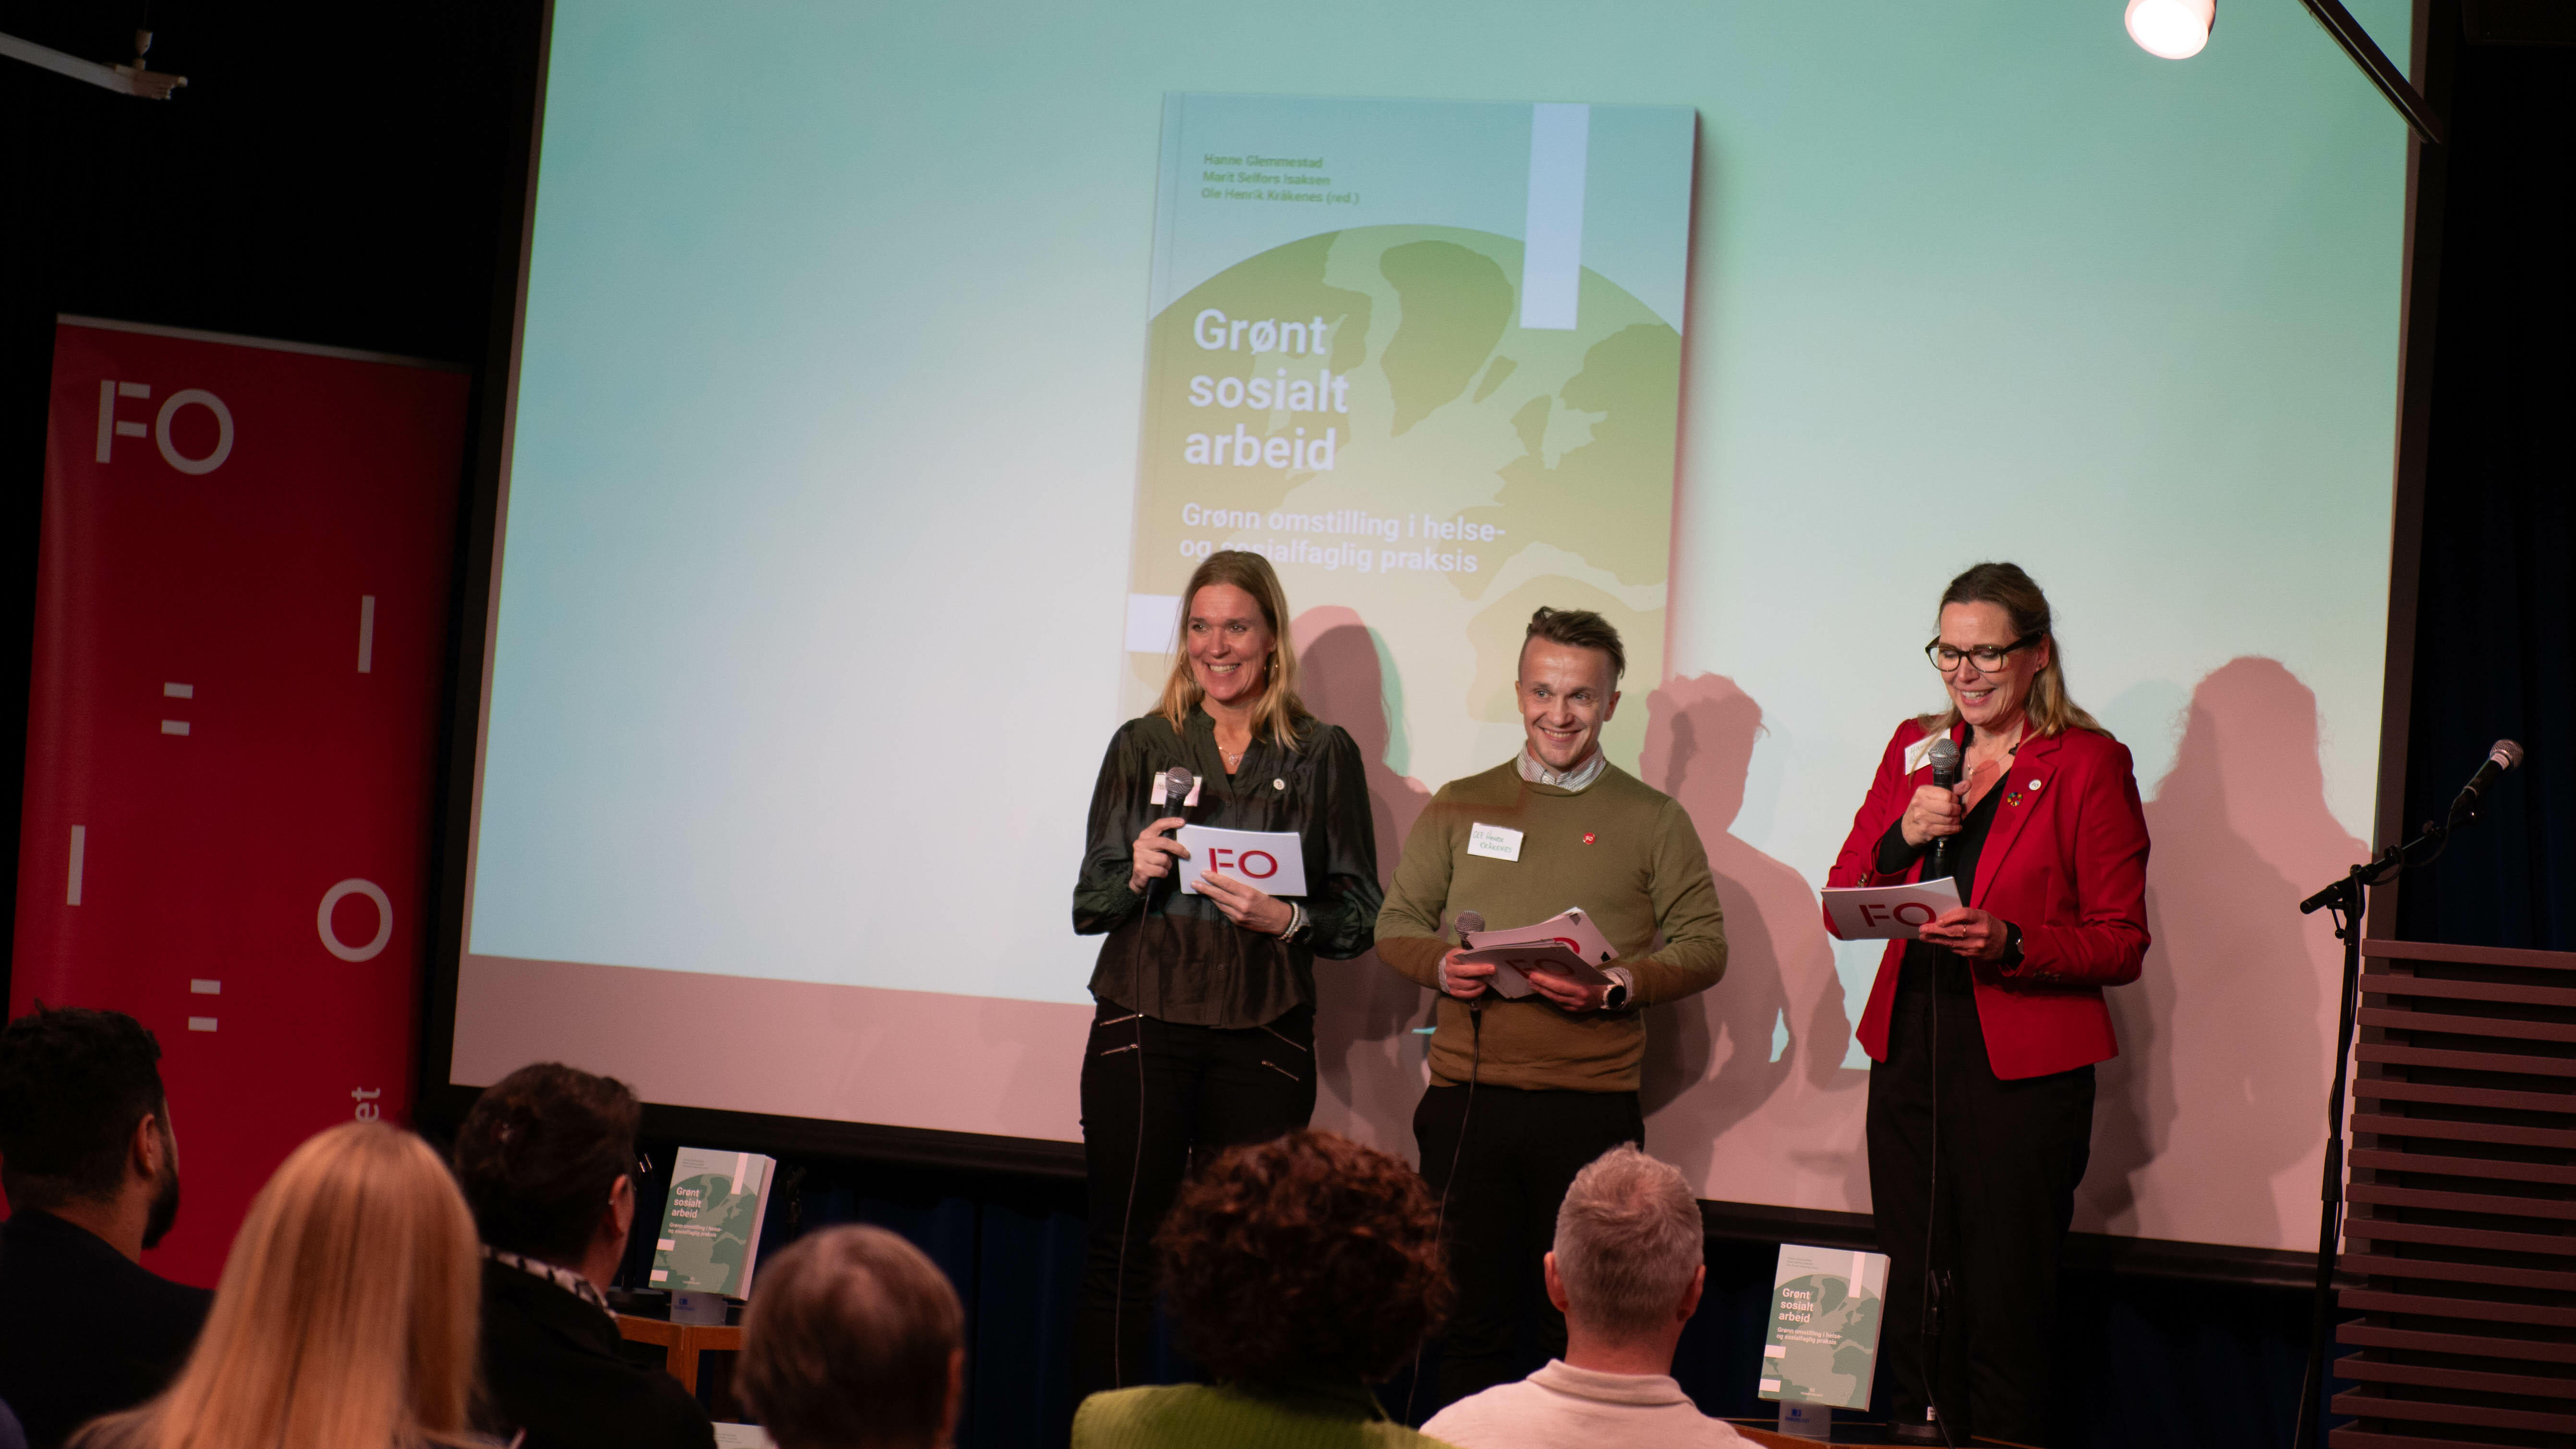 BOKLANSERING: Tre stolte profesjonsledere på boklansering 6. november på Litteraturhuset. Fra venstre: Marit Isaksen, Ole Henrik Kråkenes og Hanne Glemmestad.